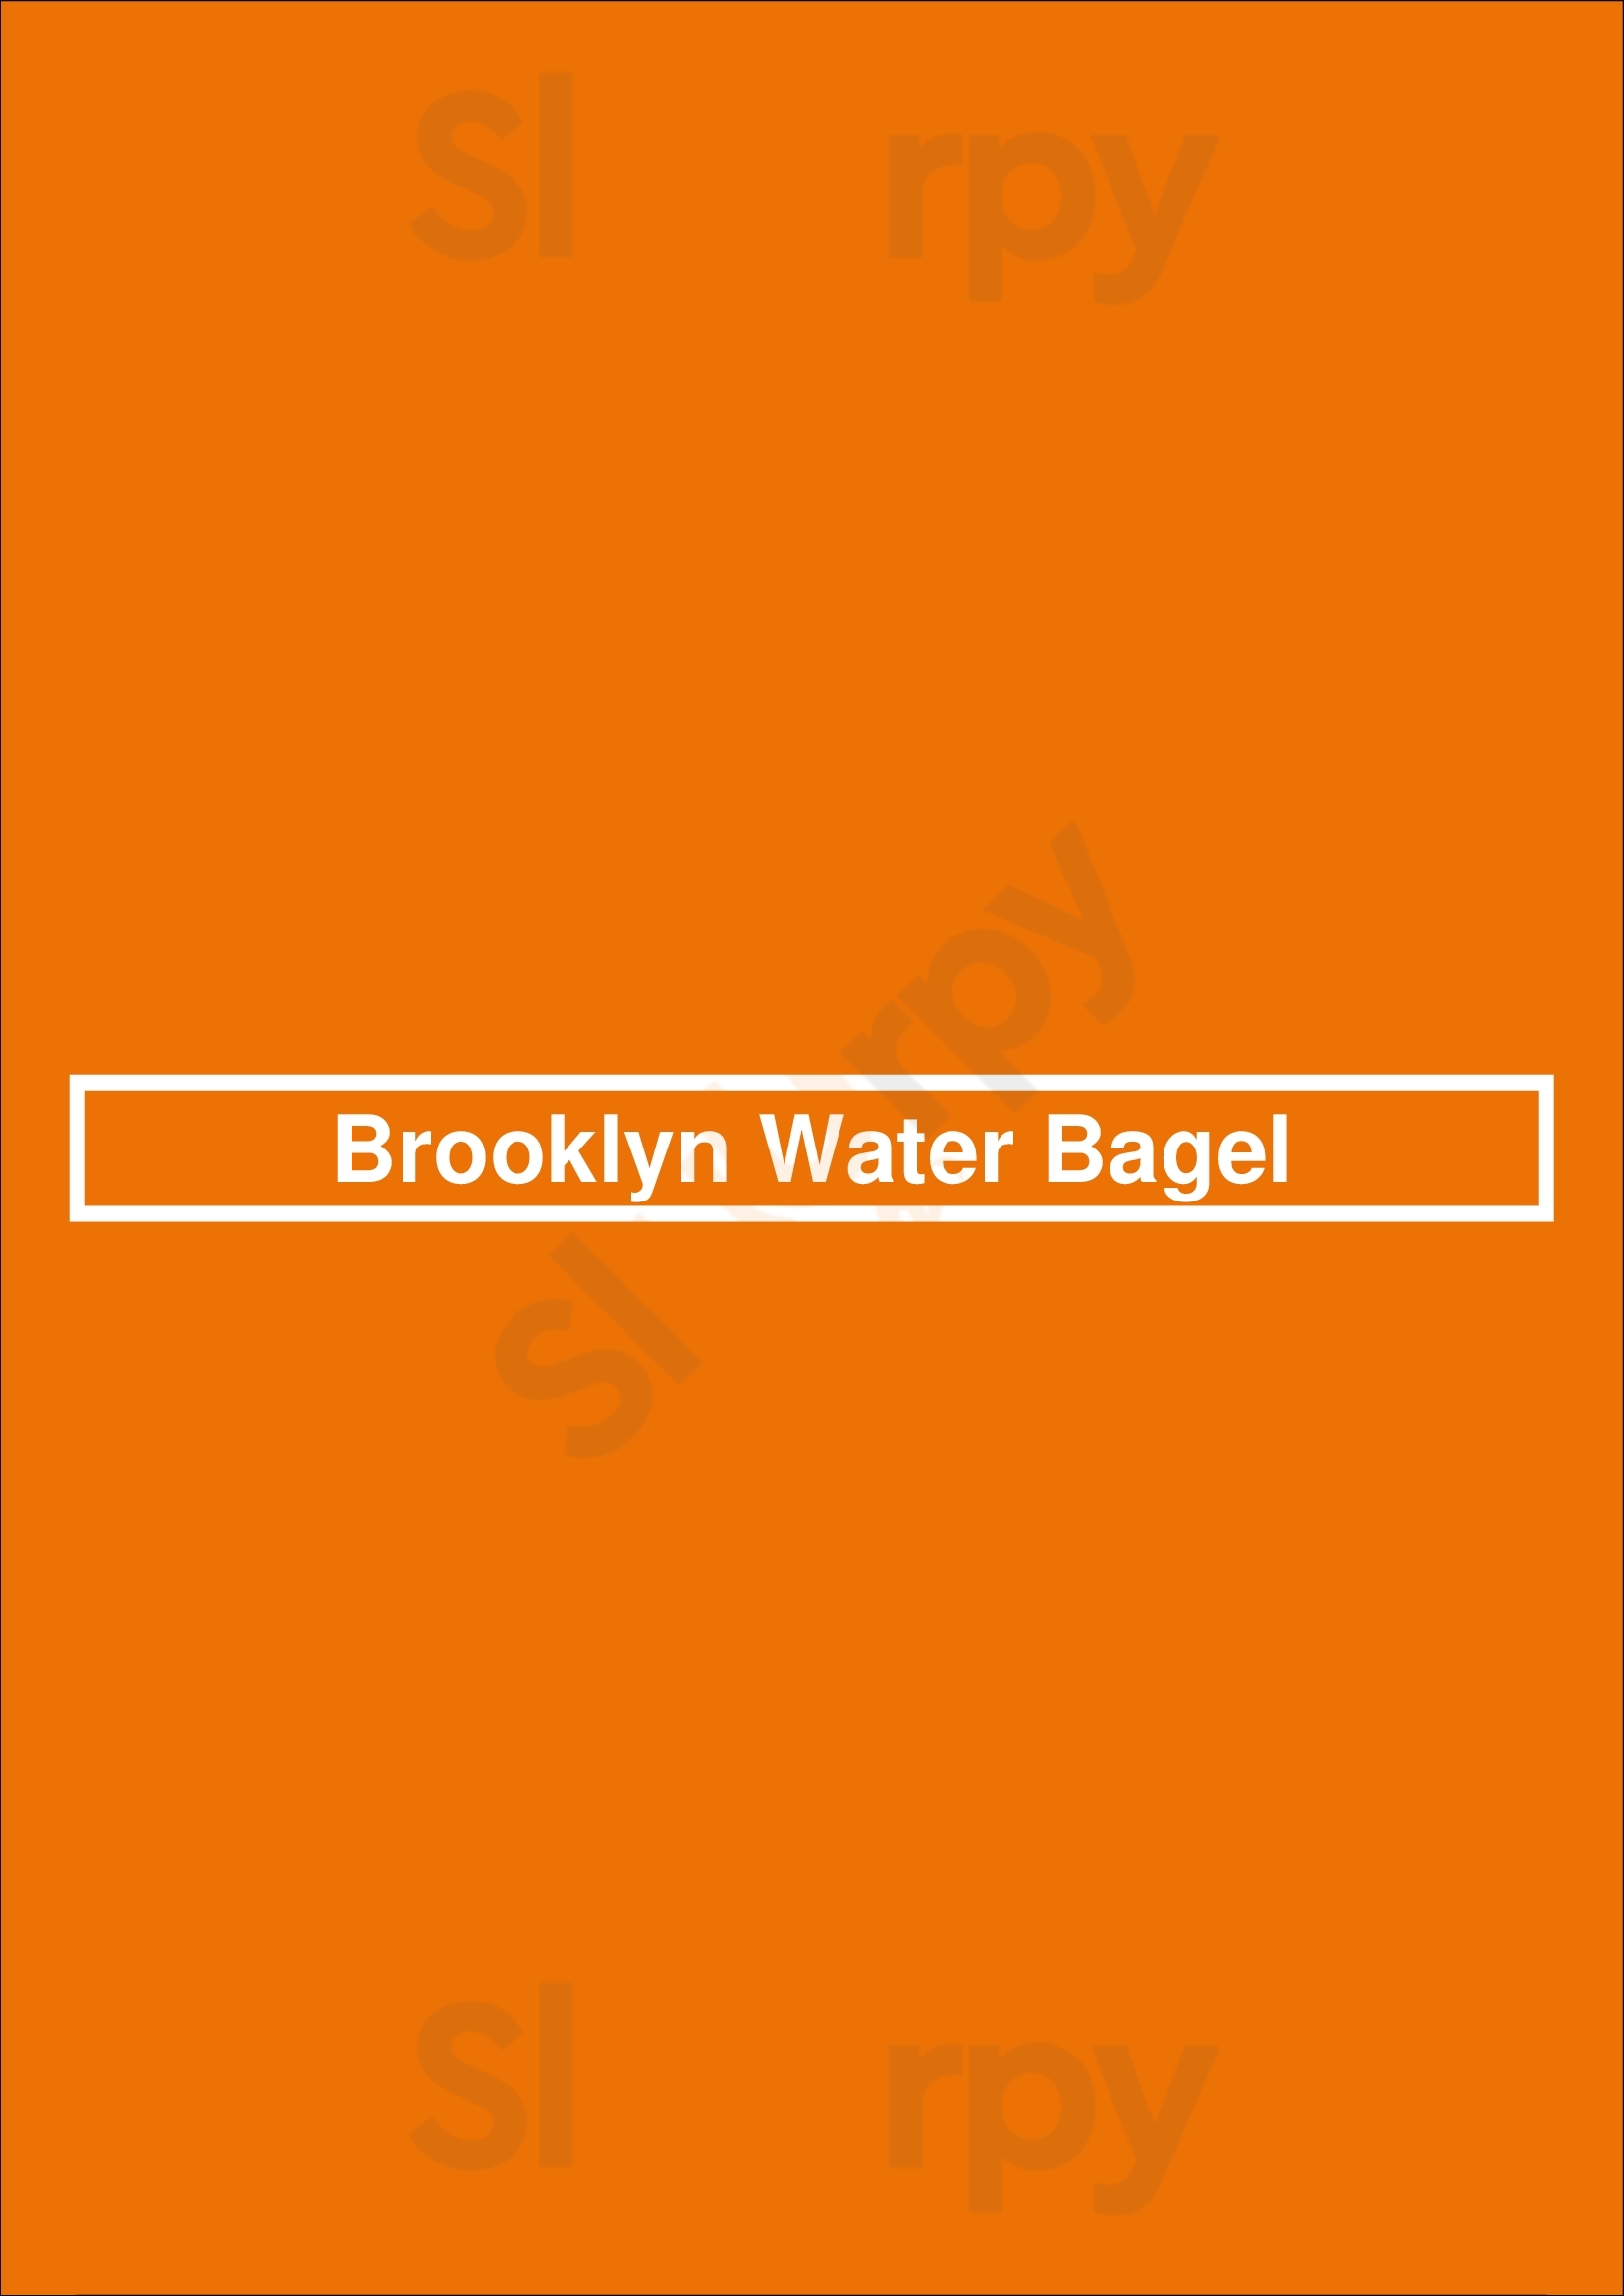 Brooklyn Water Bagel Fort Lauderdale Menu - 1